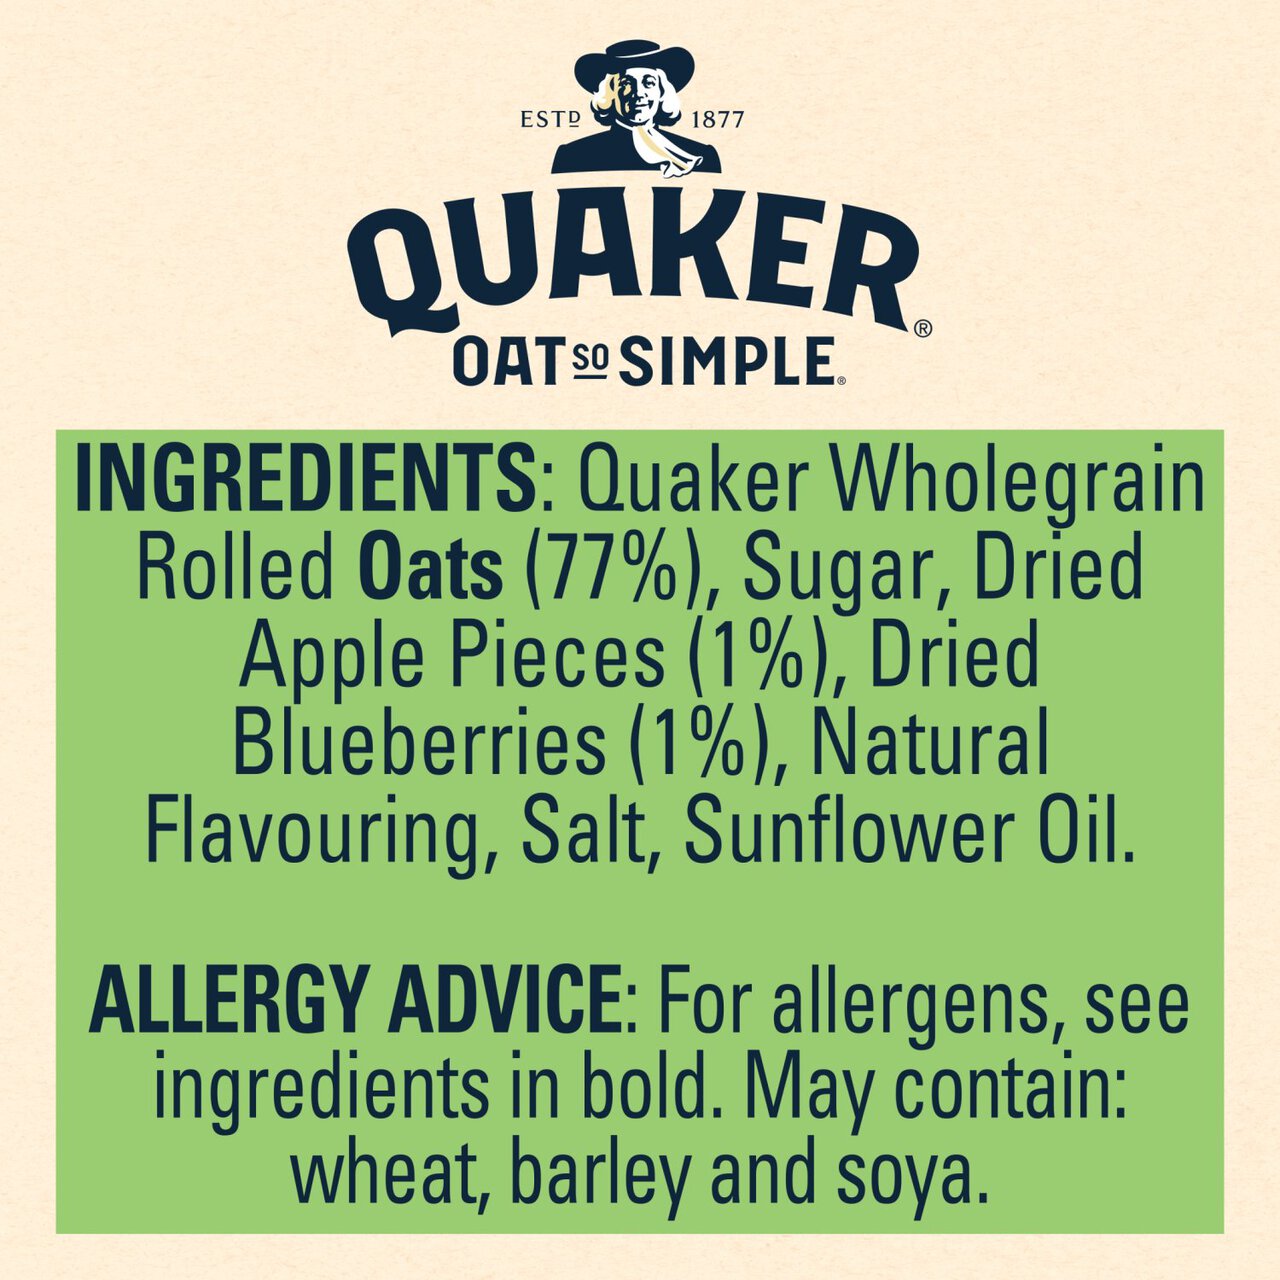 Quaker Oat So Simple Apple & Blueberry Porridge Sachets Cereal 10 per pack